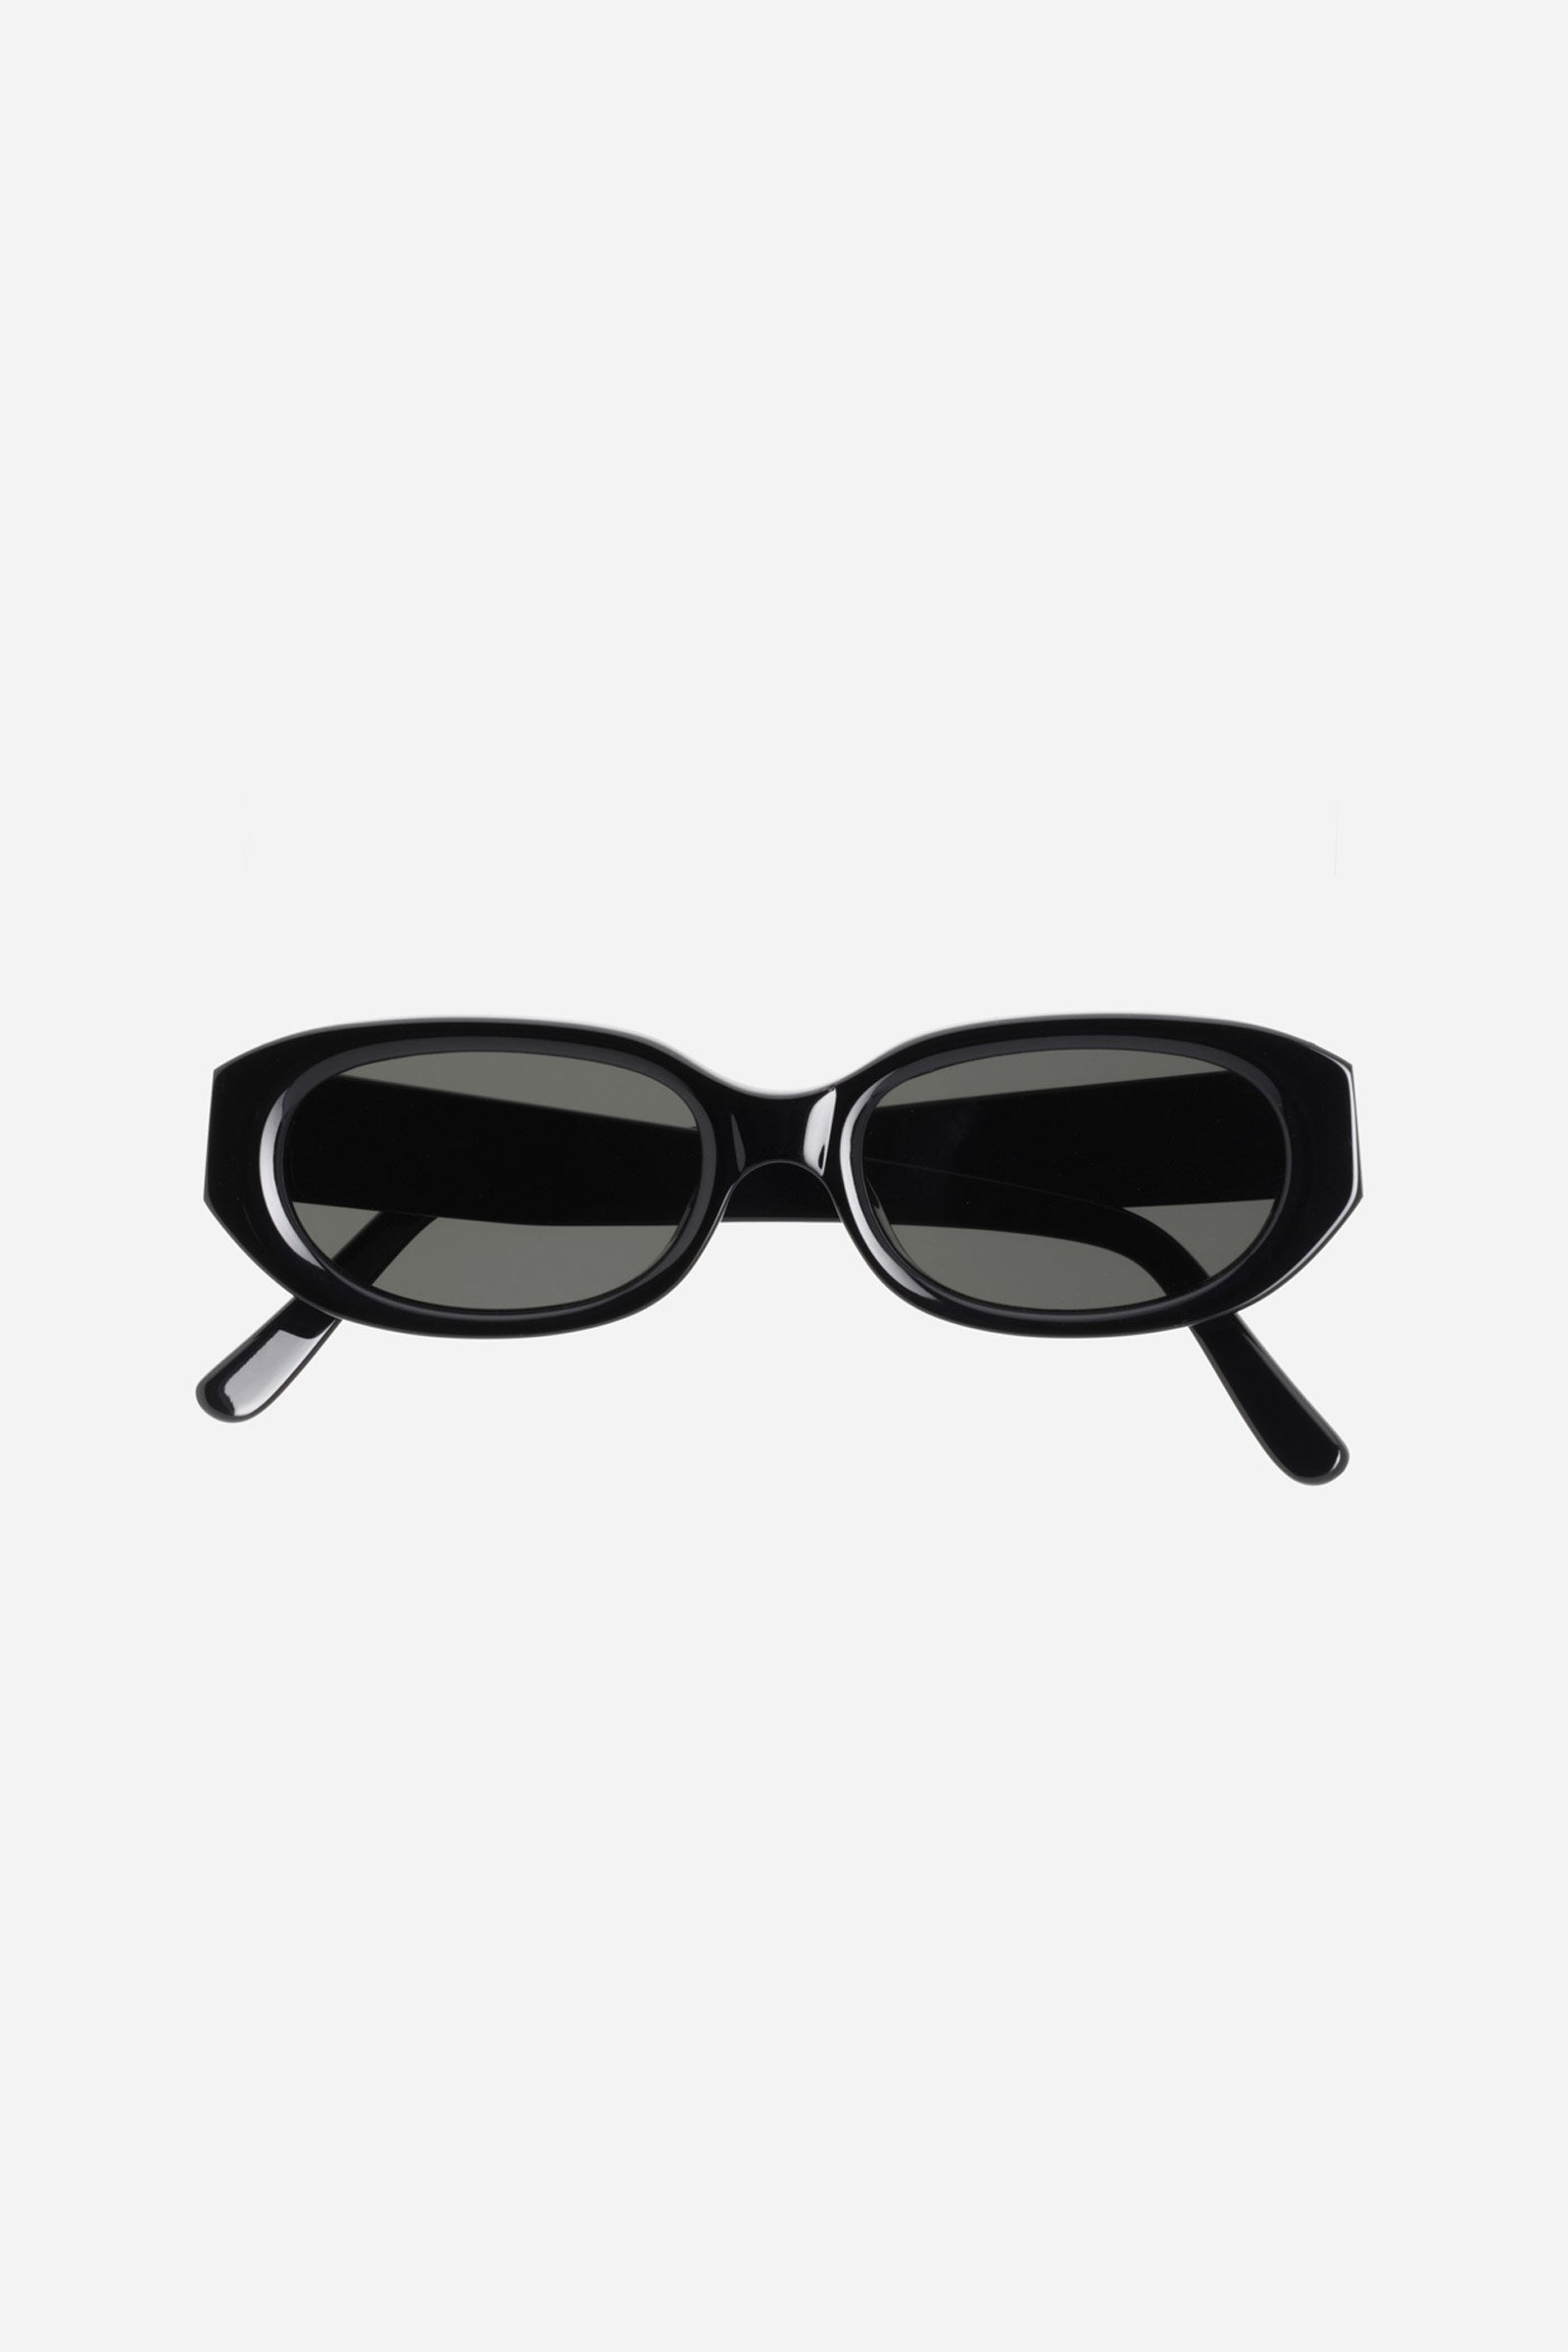 Mannequin Sunglasses Black